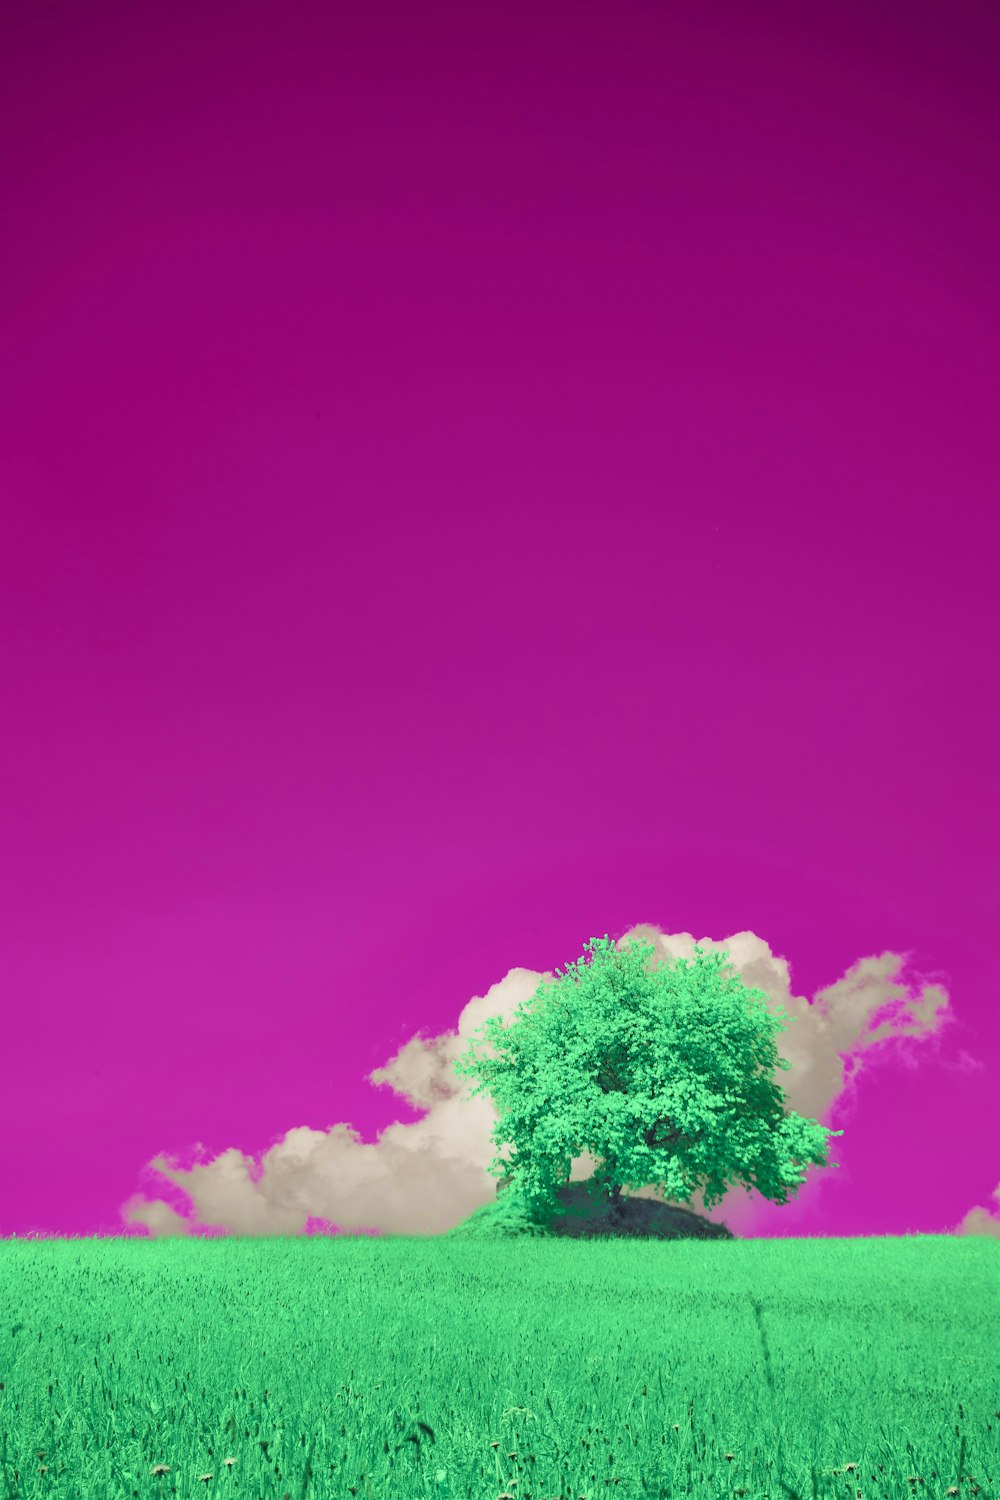 a lone tree in a green field under a purple sky